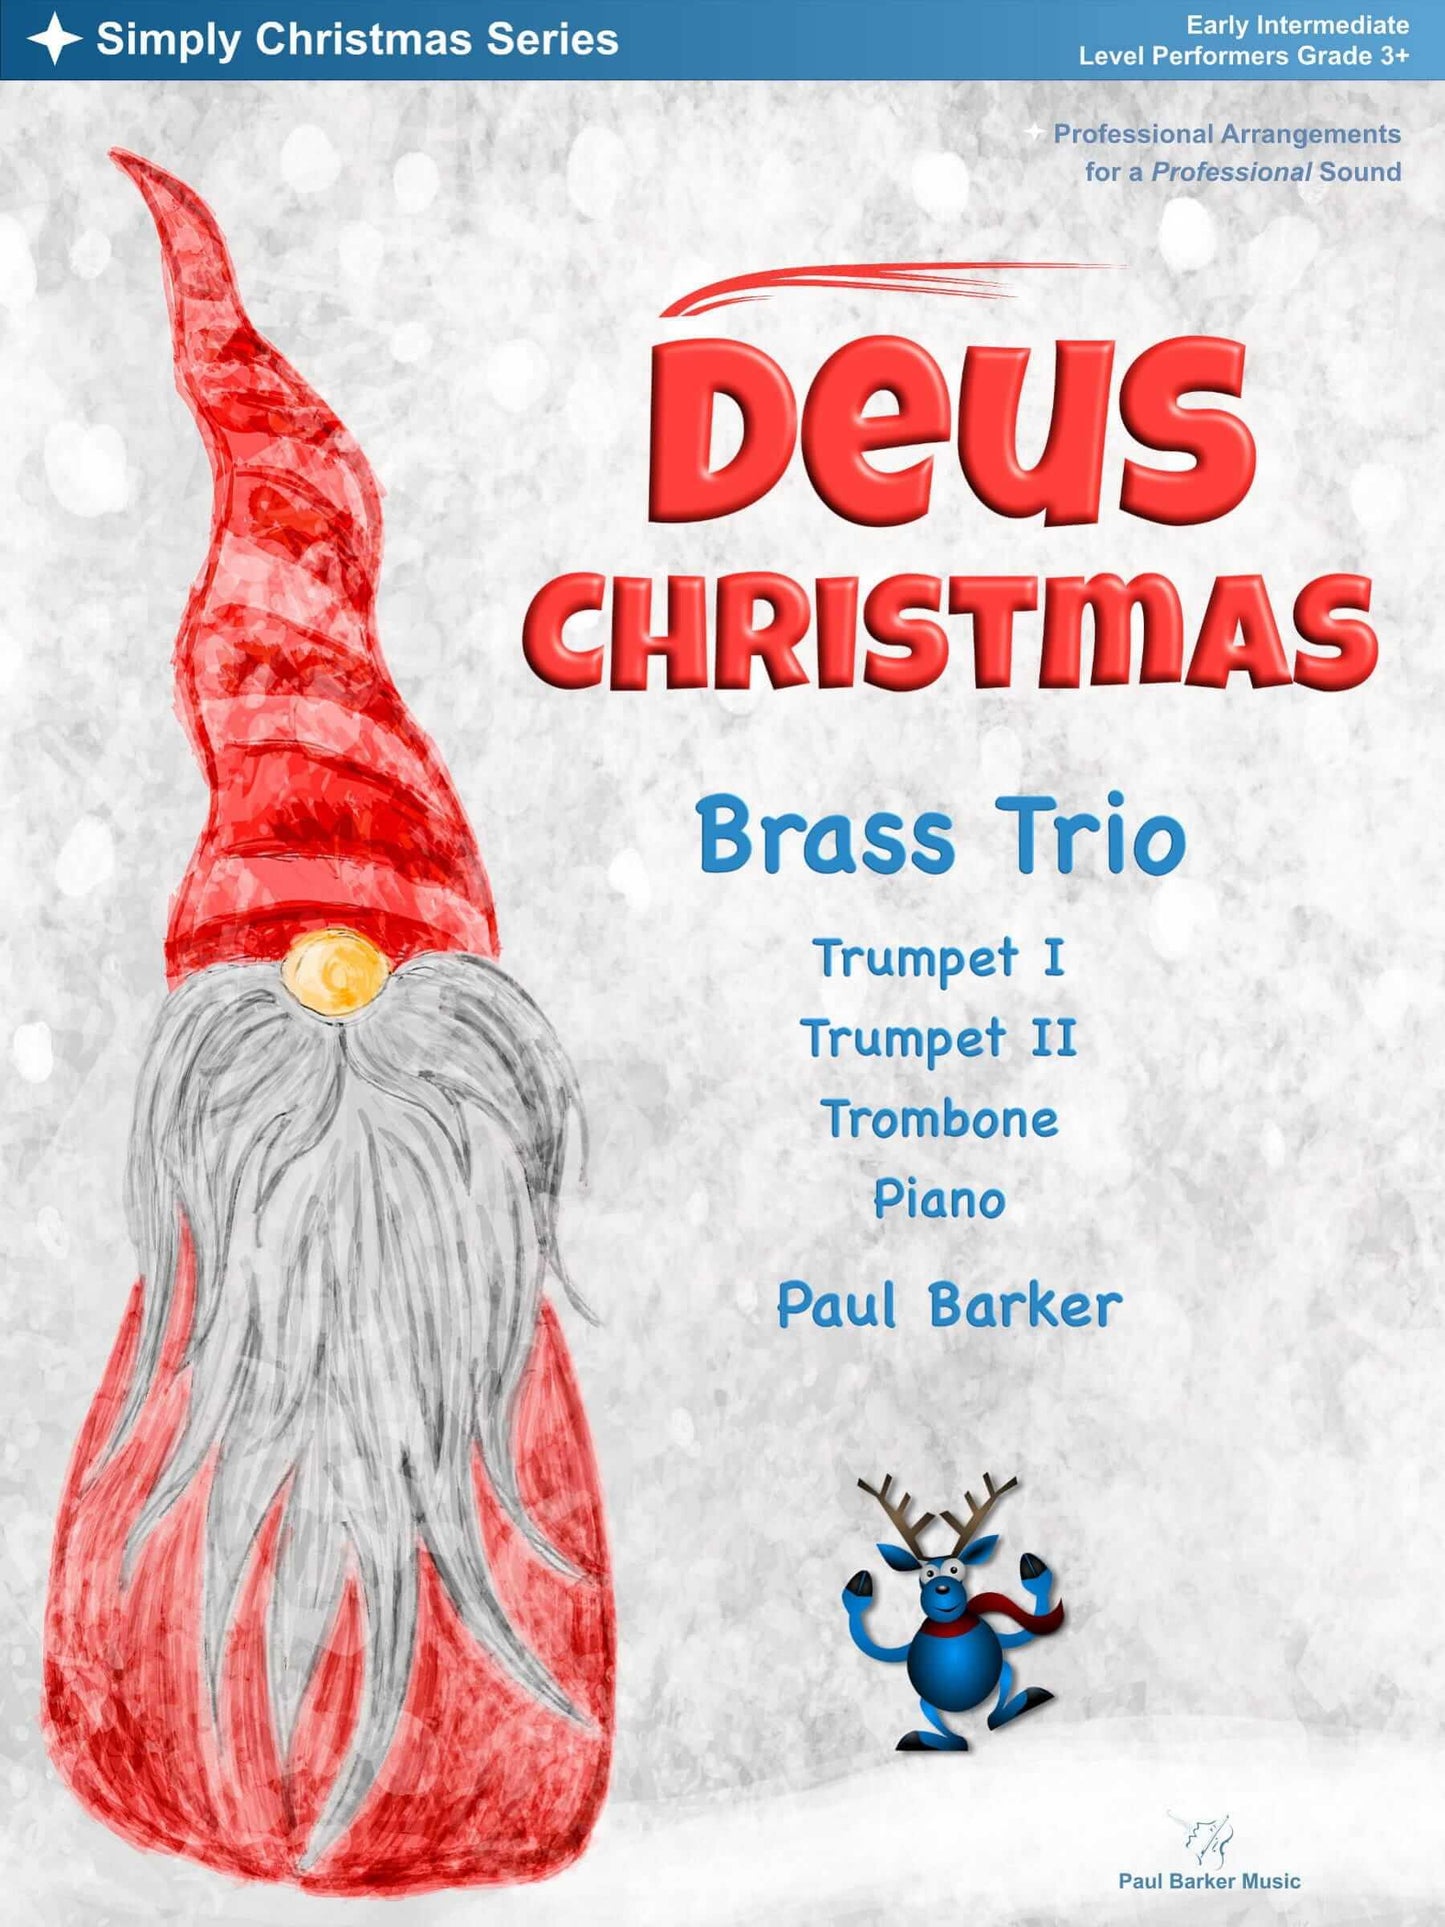 Deus Christmas (Brass Trio) - Paul Barker Music 